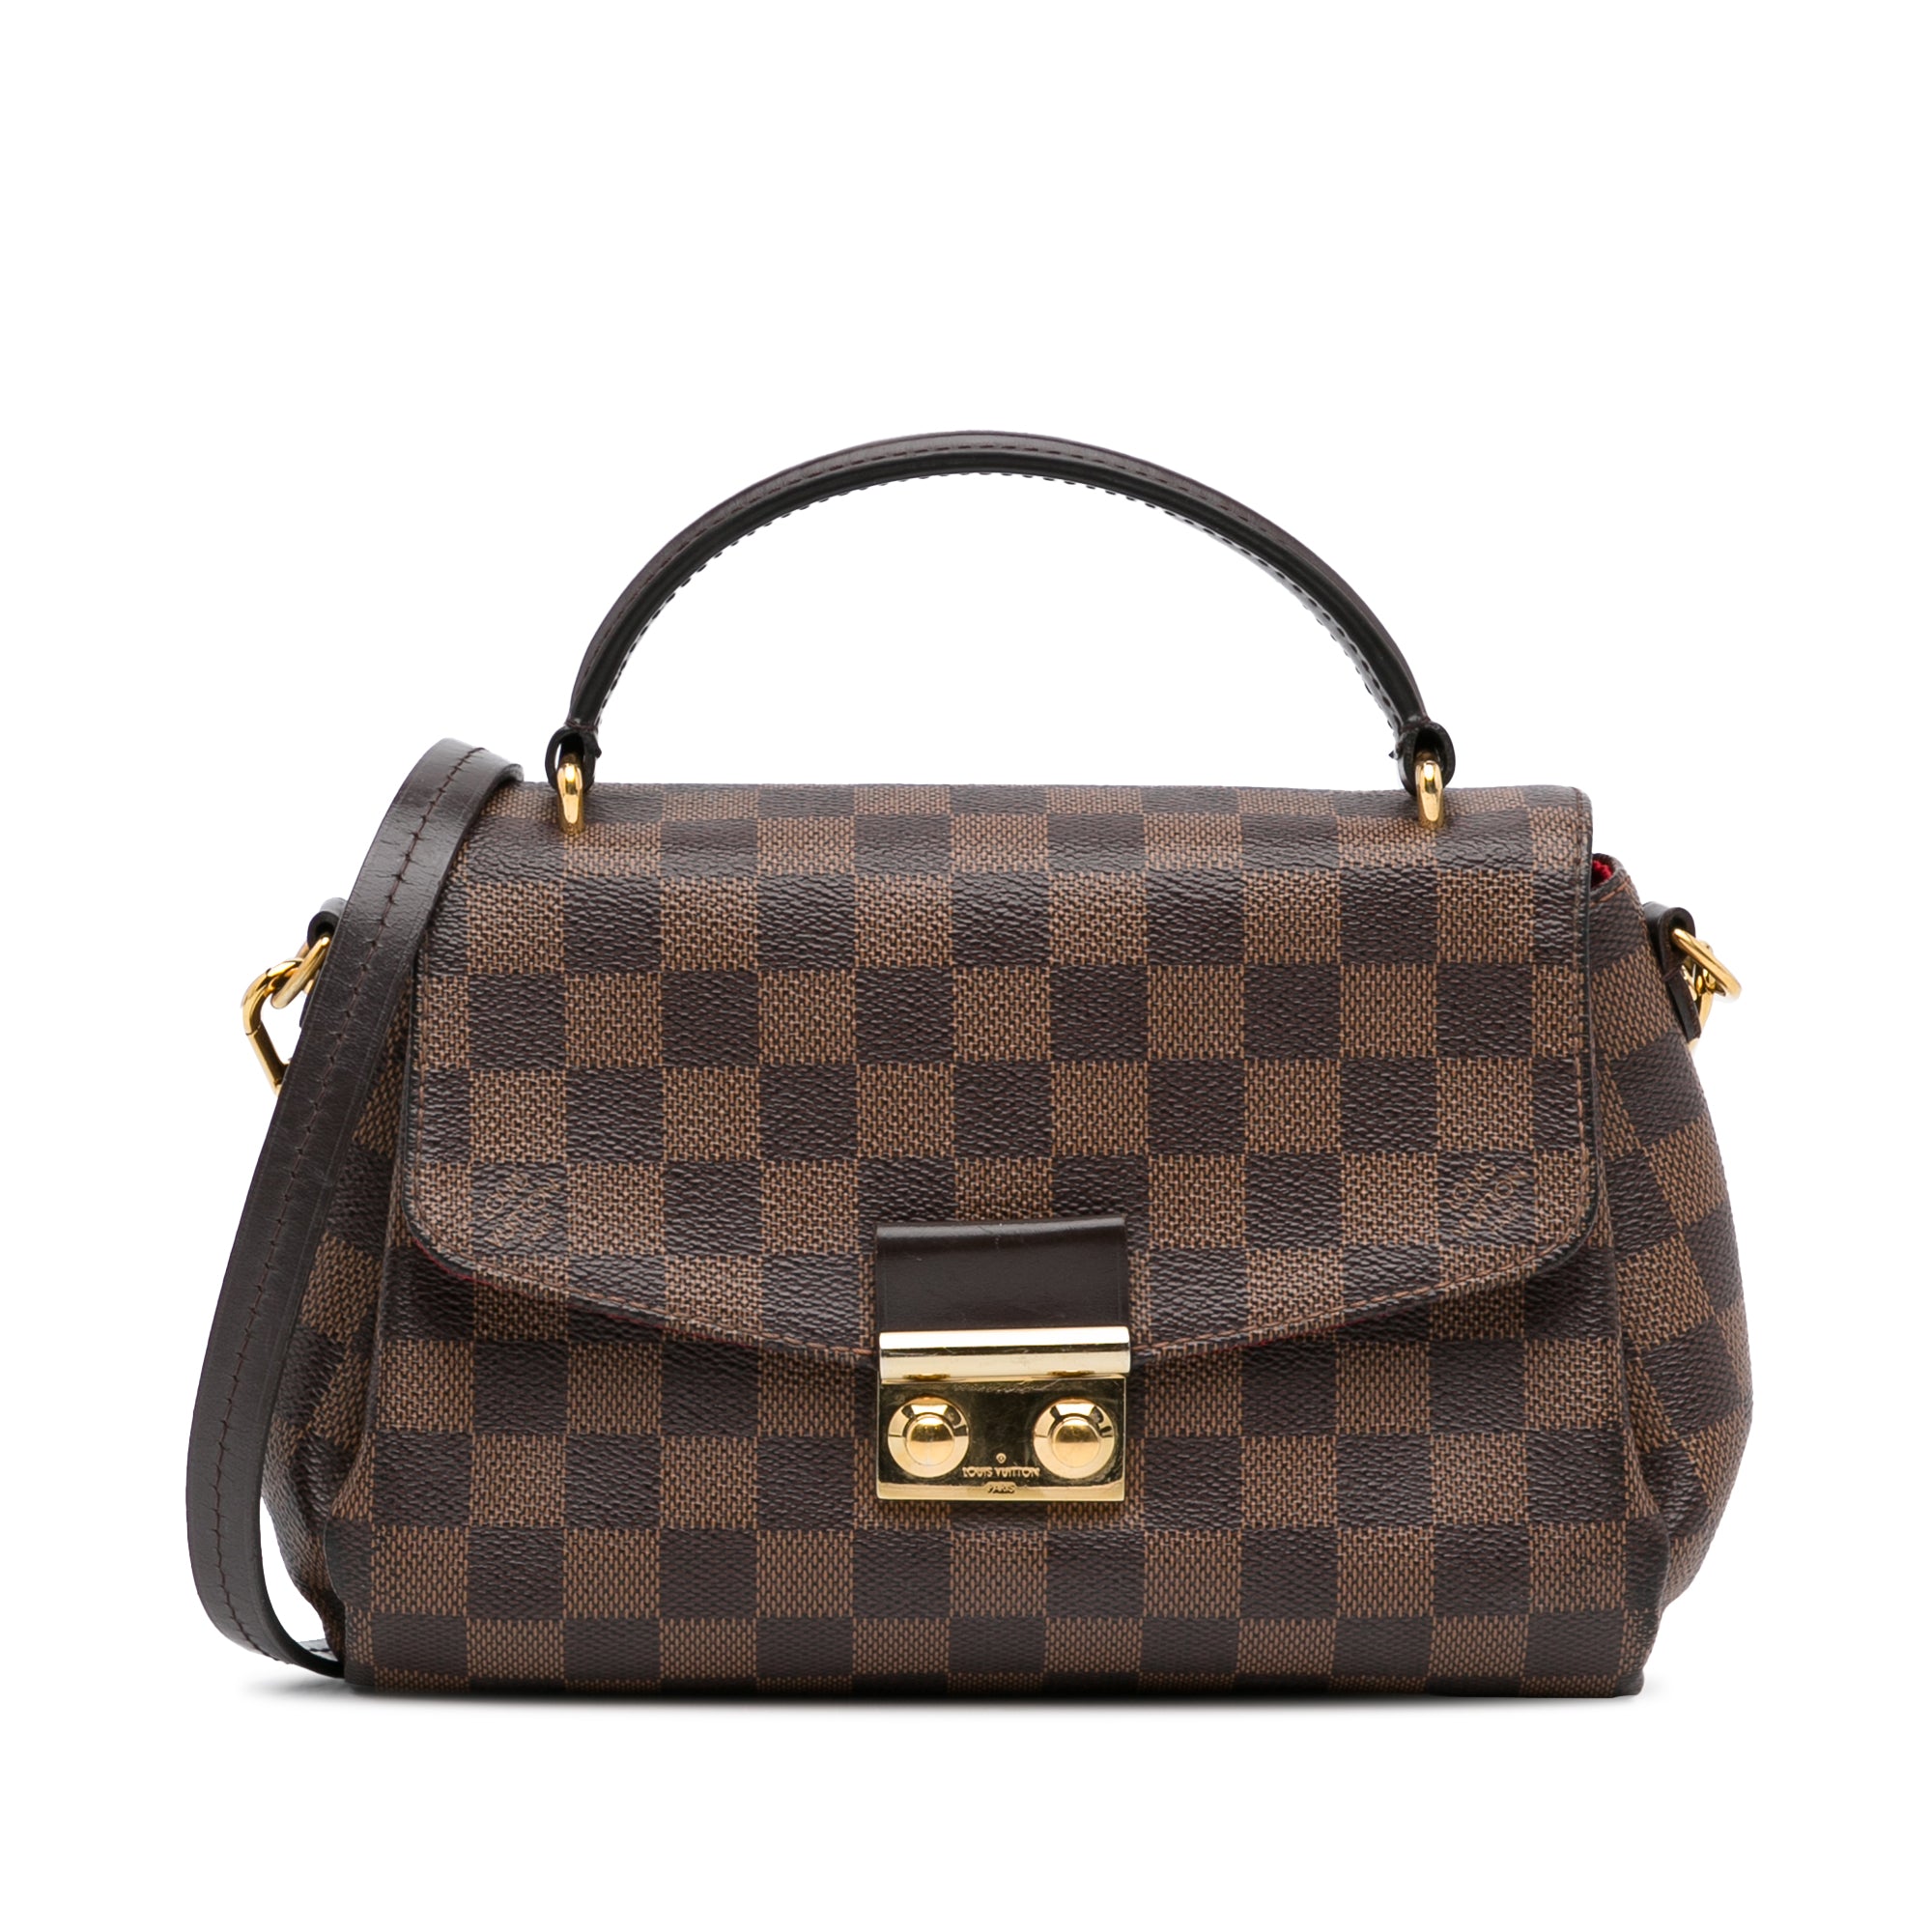 Louis Vuitton - Authenticated Croisette Handbag - Leather Black for Women, Good Condition